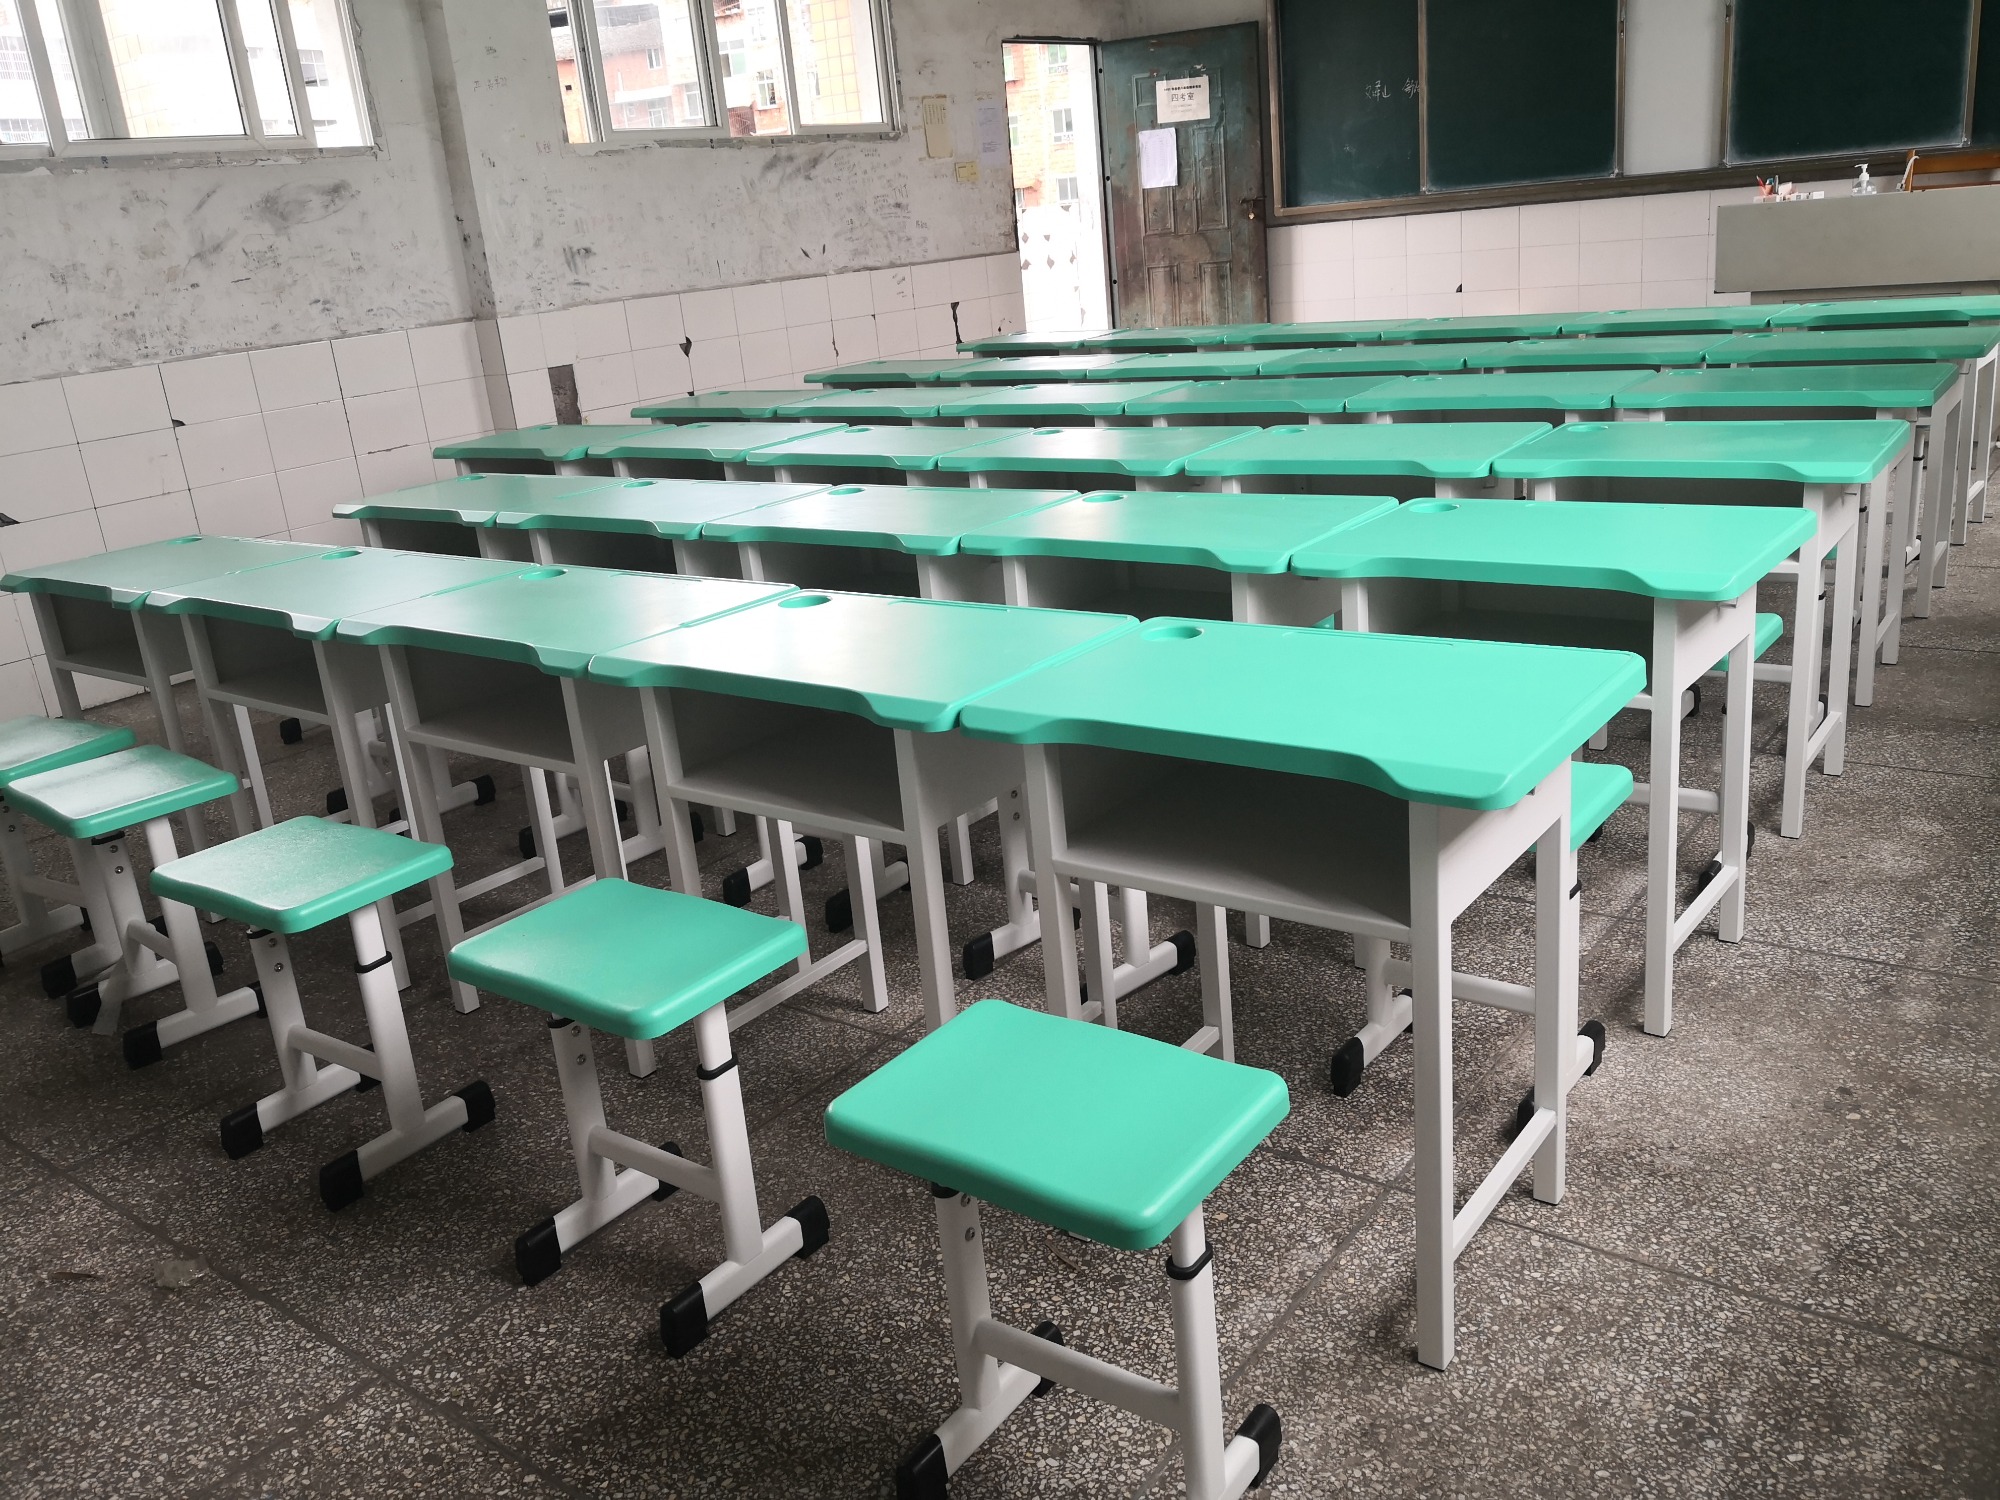 达州市百节镇木子中心学校采购的课桌椅安装完成